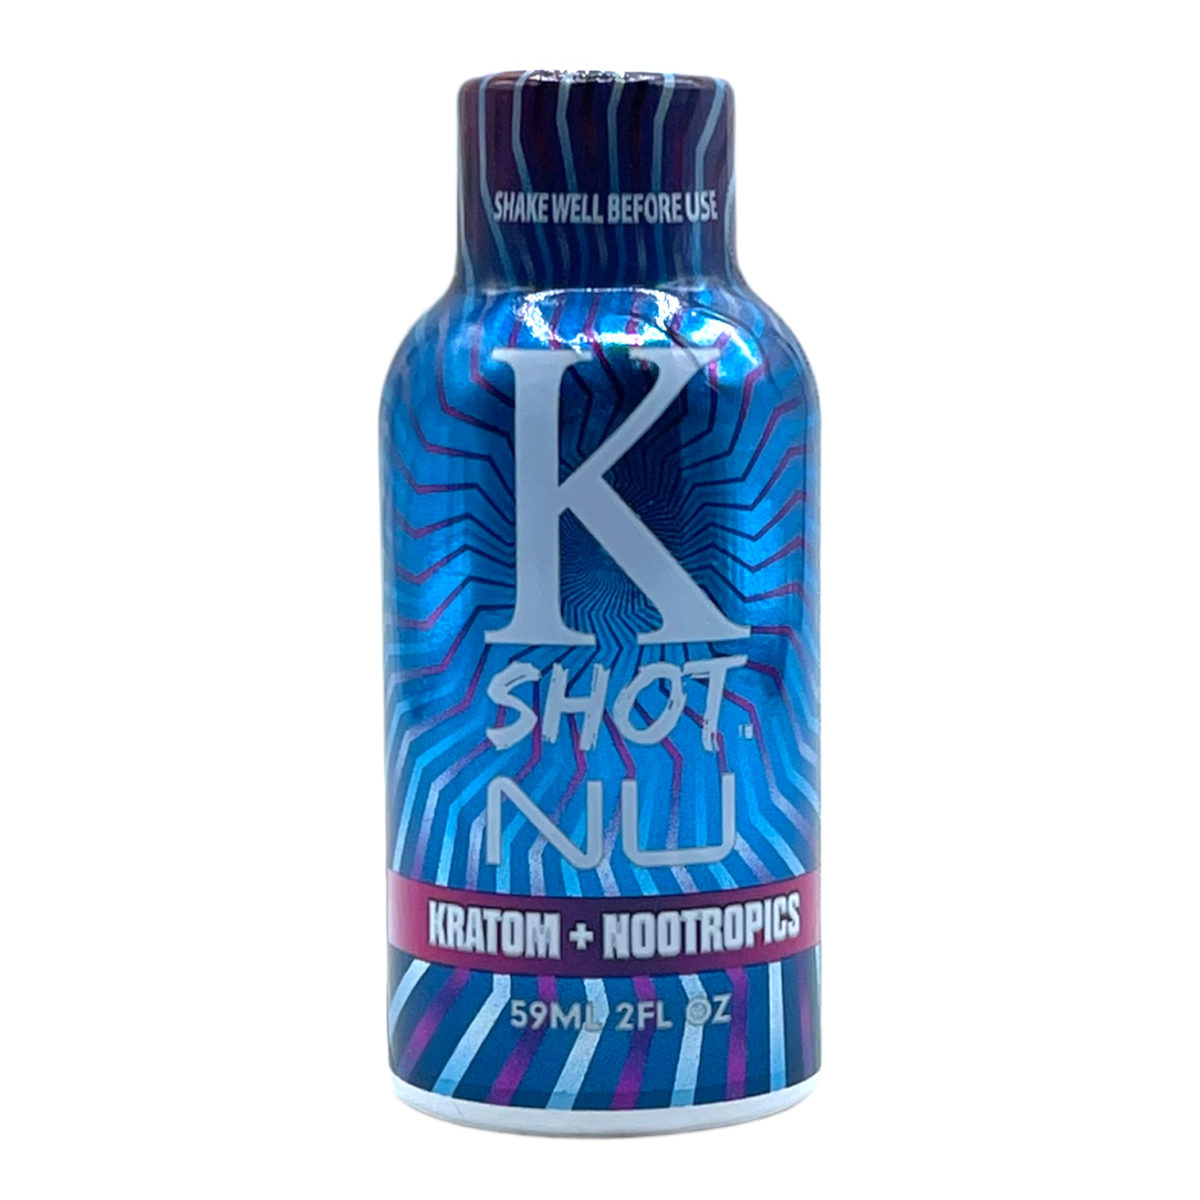 K-Shot NU Nootropic Kratom Extract Shot – 59ml